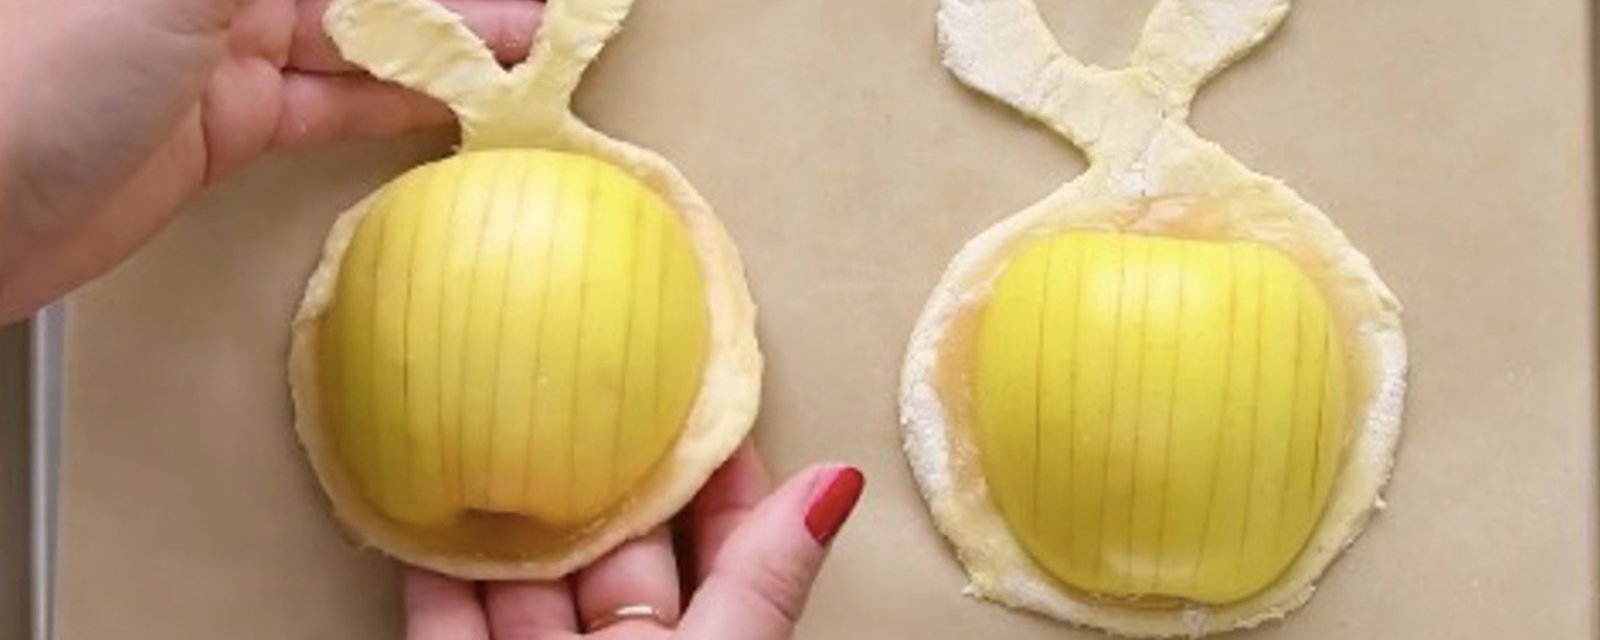 3 recettes de desserts aux pommes qui vous feront totalement fondre de bonheur! 